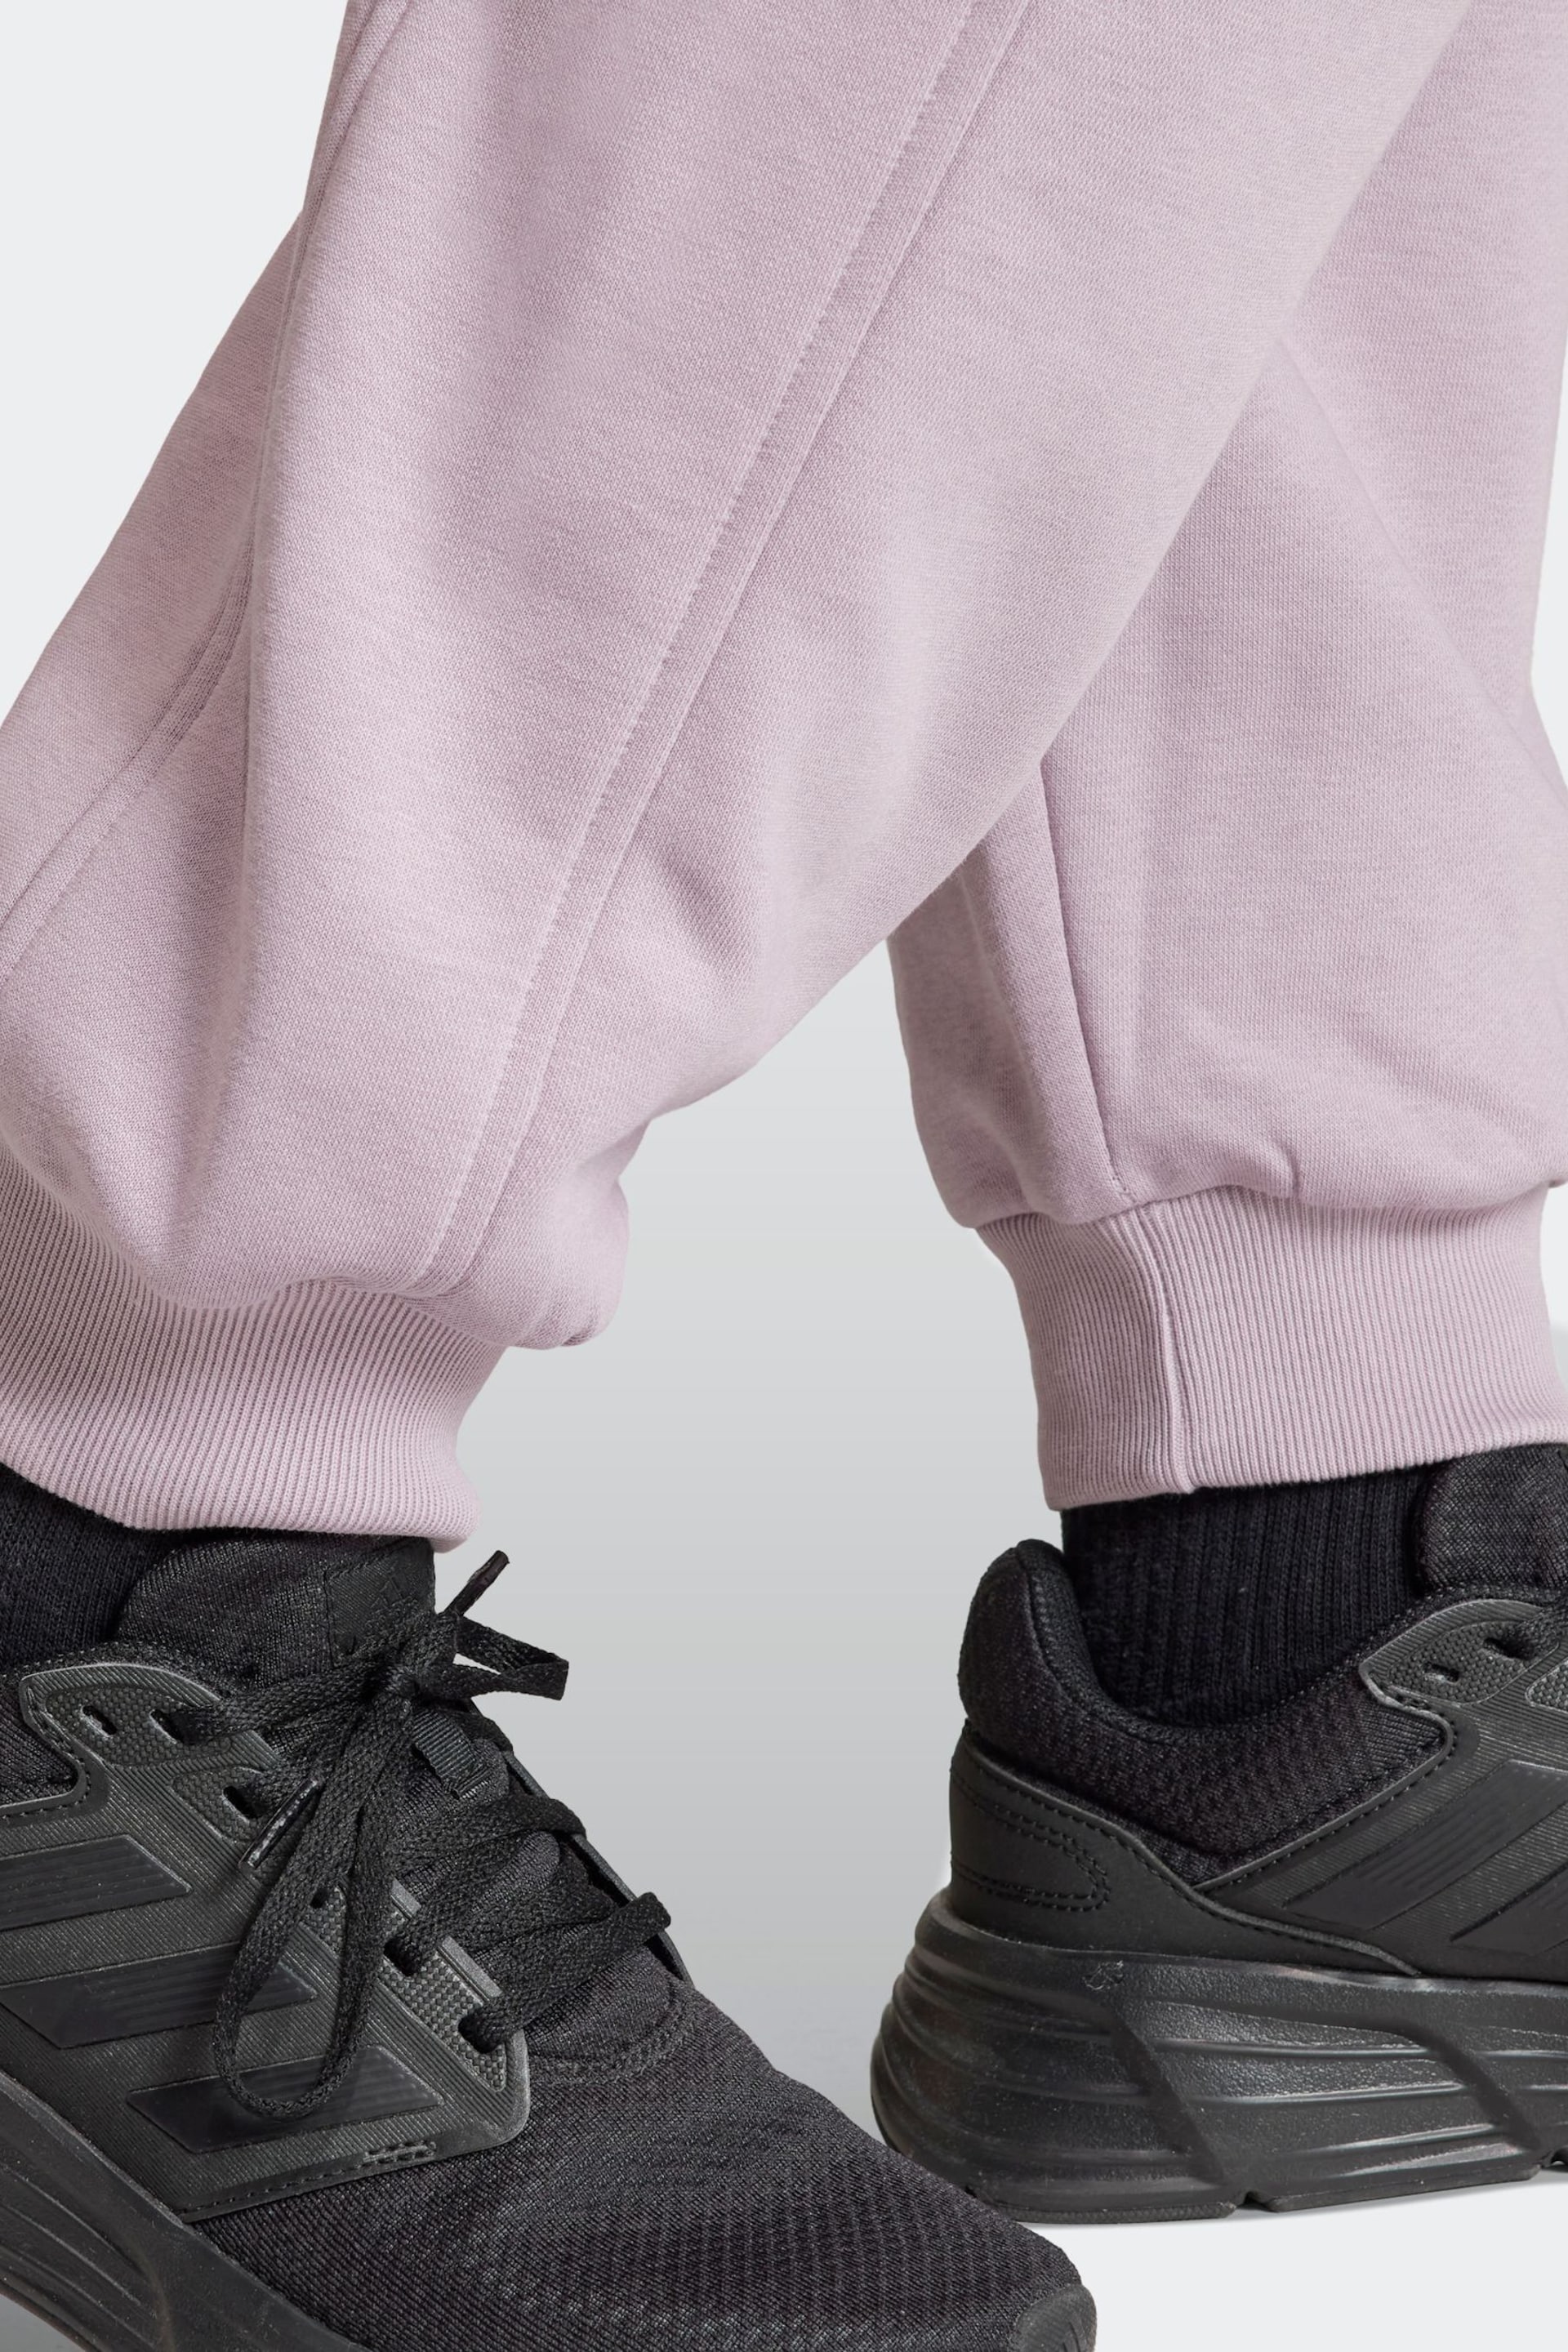 adidas Purple Sportswear All Szn Fleece Loose Joggers - Image 5 of 6